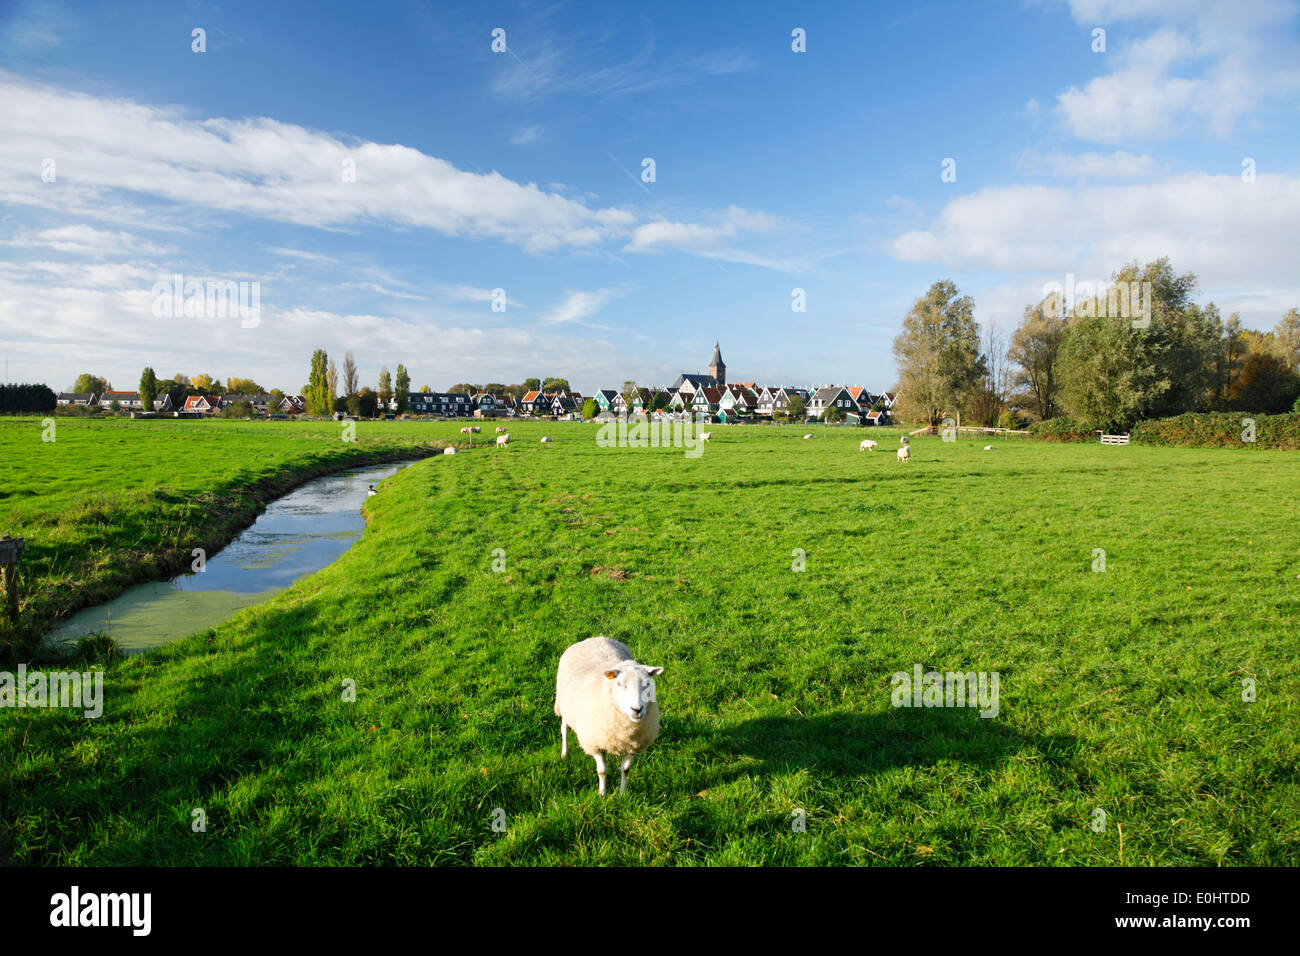 Niederlande, Marken, Dorf, Weide, Schafe Stock Photo